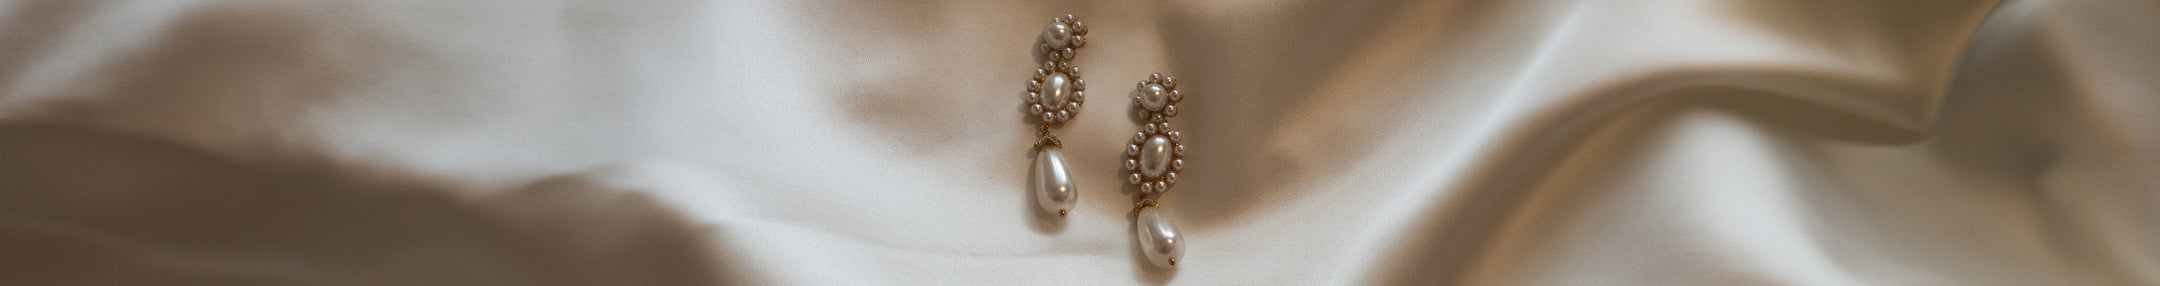 Image of pearl earrings.